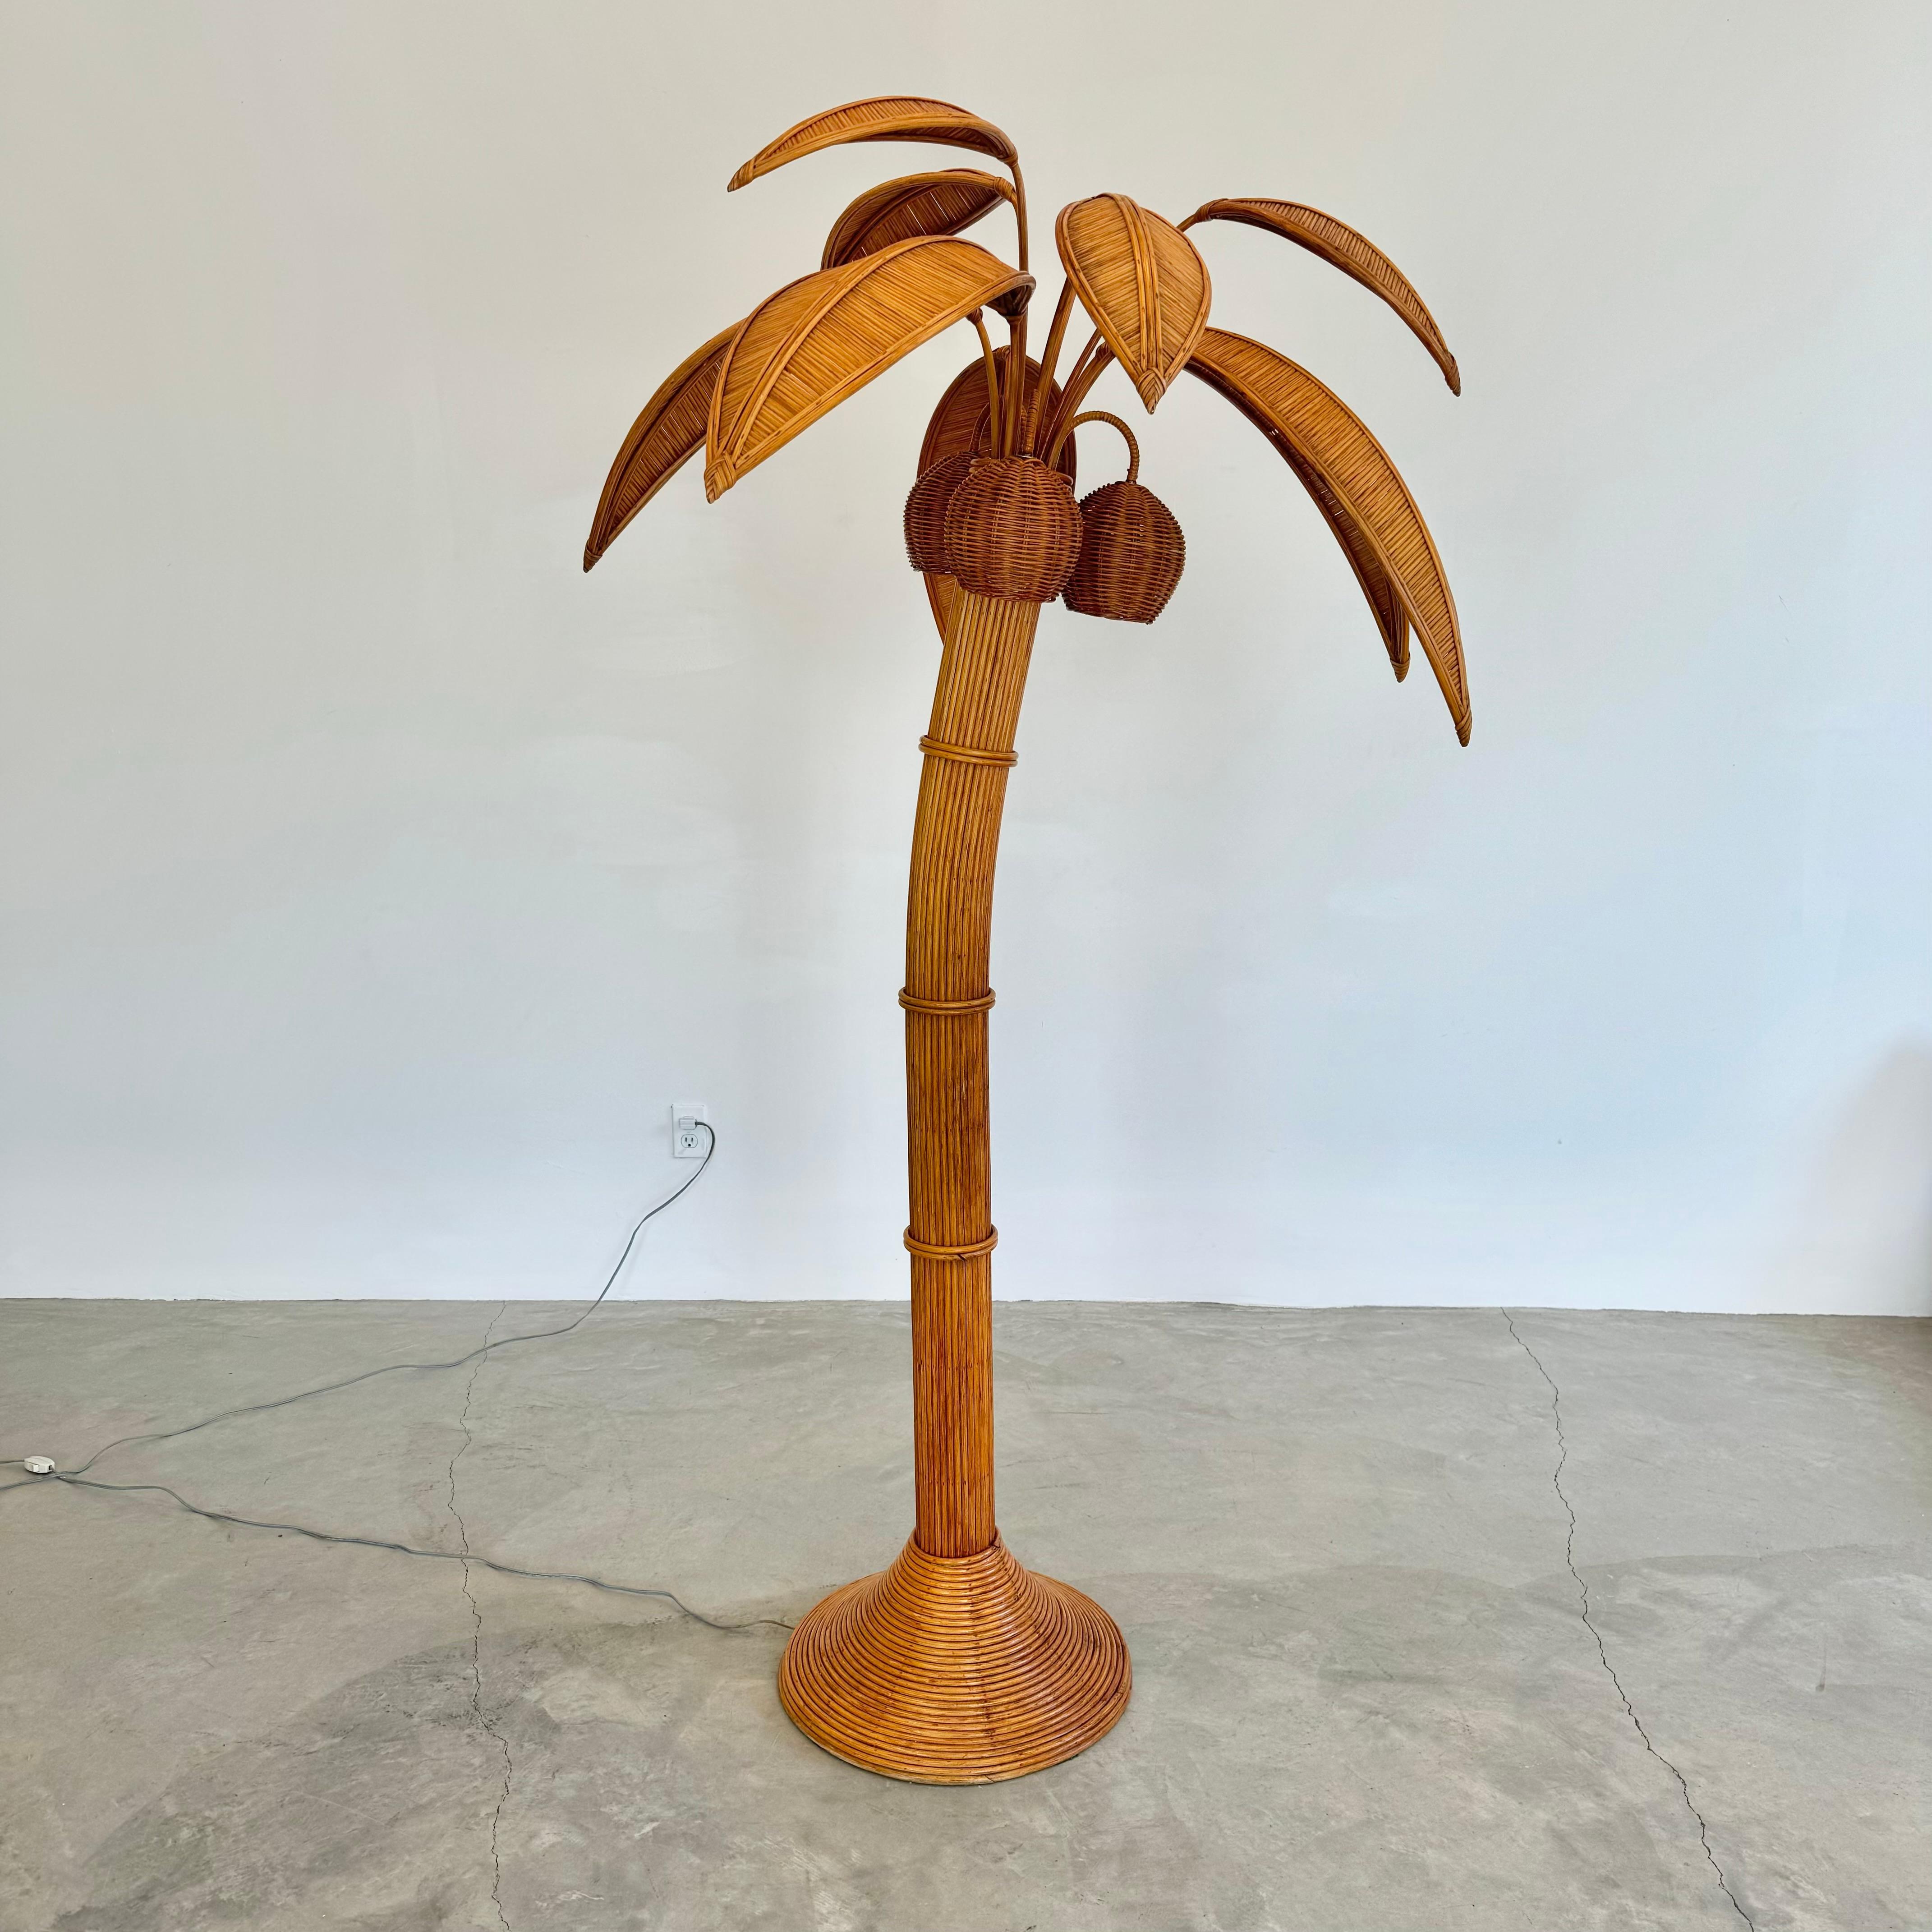 Strandige Stehlampe mit einer Palme. Knapp einen Meter groß. Hergestellt aus Rattan und Weide. Drei Weidenkokosnüsse enthalten jeweils eine Steckdose/Lampe. Kokosnüsse schwenken. Naturfarbene Palmenblätter aus Weide und Rattan sprießen aus der